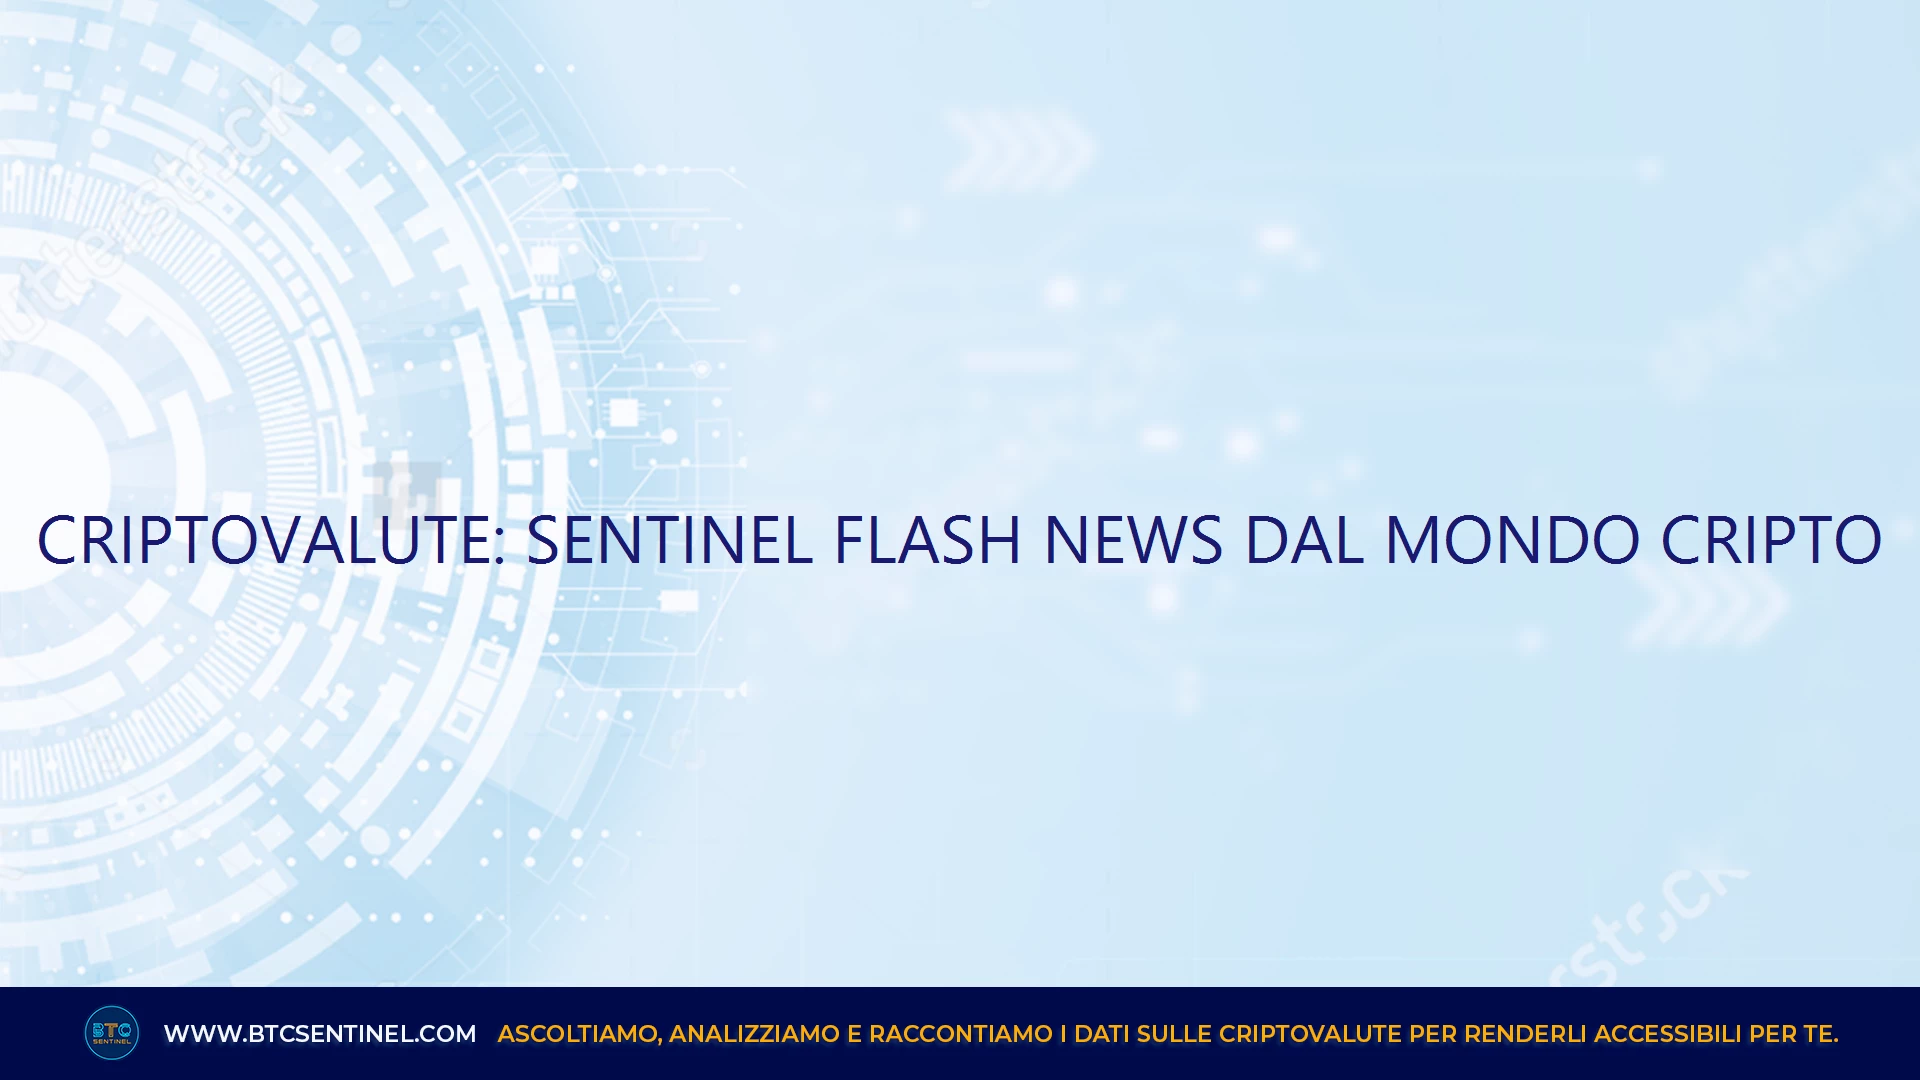 Criptovalute: Sentinel Flash News dal mondo cripto